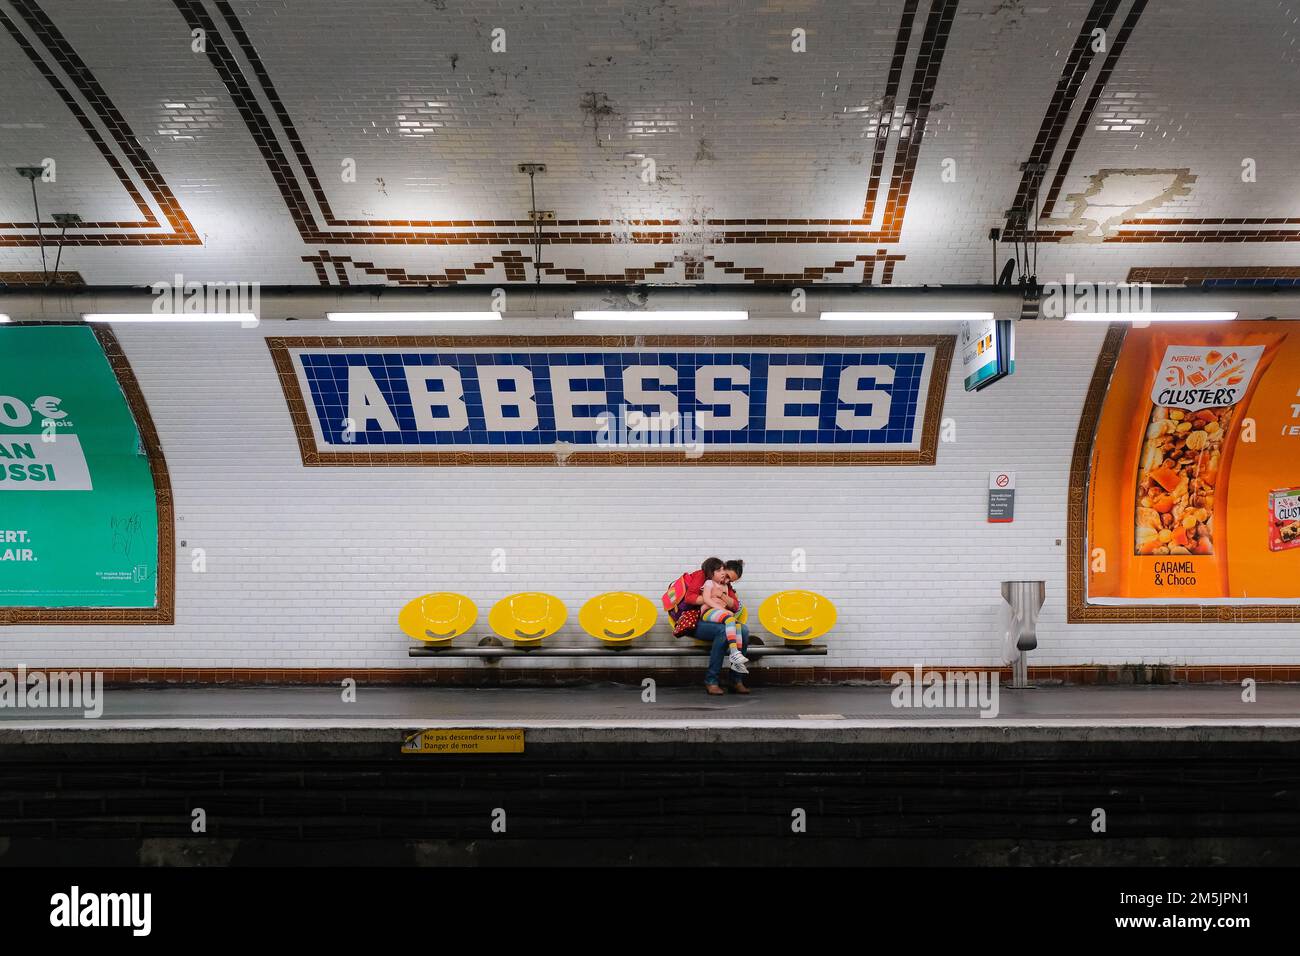 Paris, France - la mère est assise sur une chaise jaune, la fille est sur les genoux. Les deux attendent le prochain train à l'intérieur de la station de métro Abbesses à Montmartre. Banque D'Images